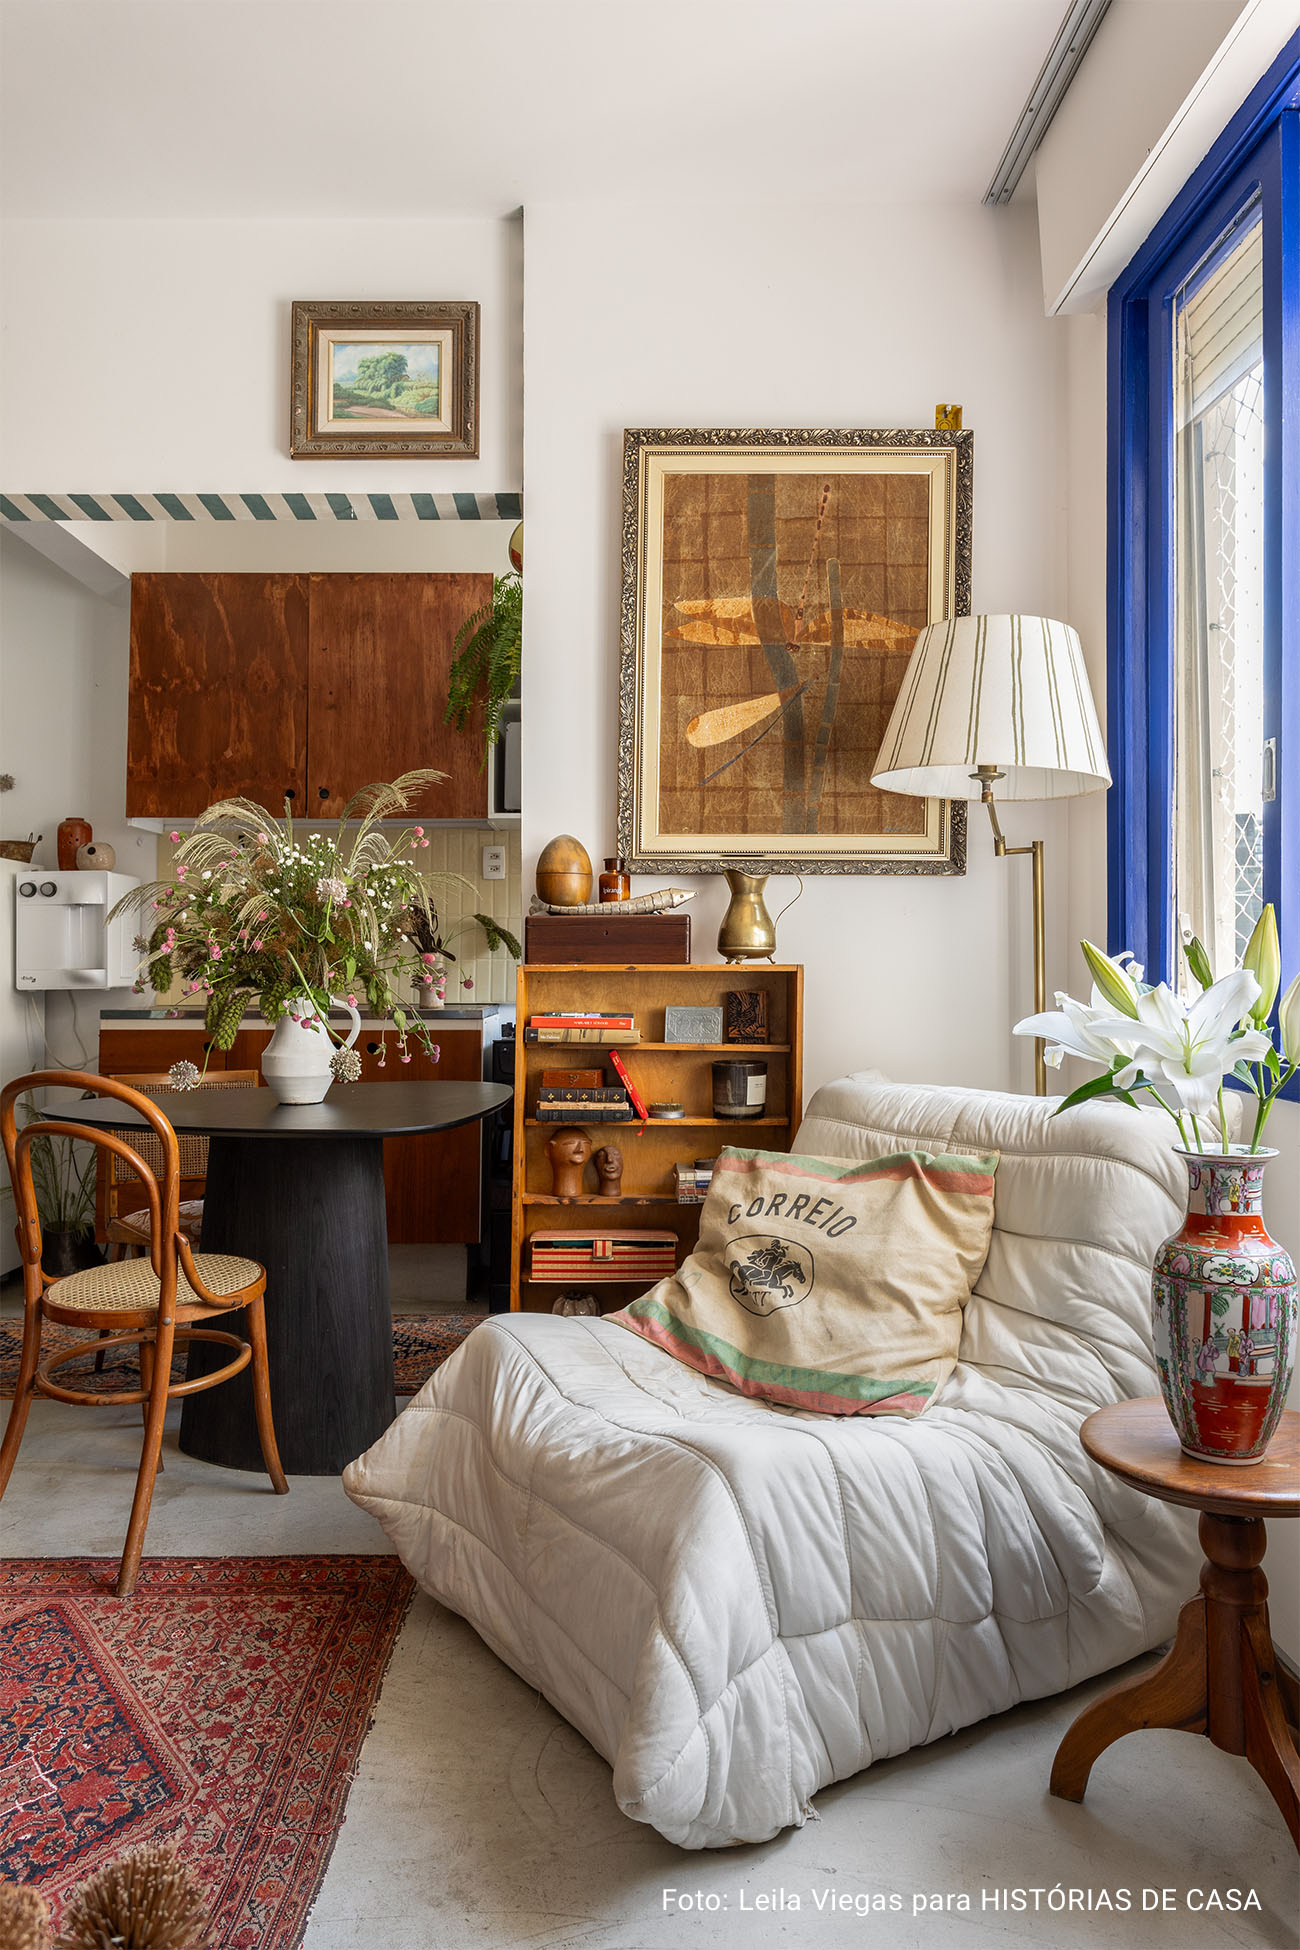 Apartamento pequeno estilo quitinete com muitos garimpos e ideias de DIY